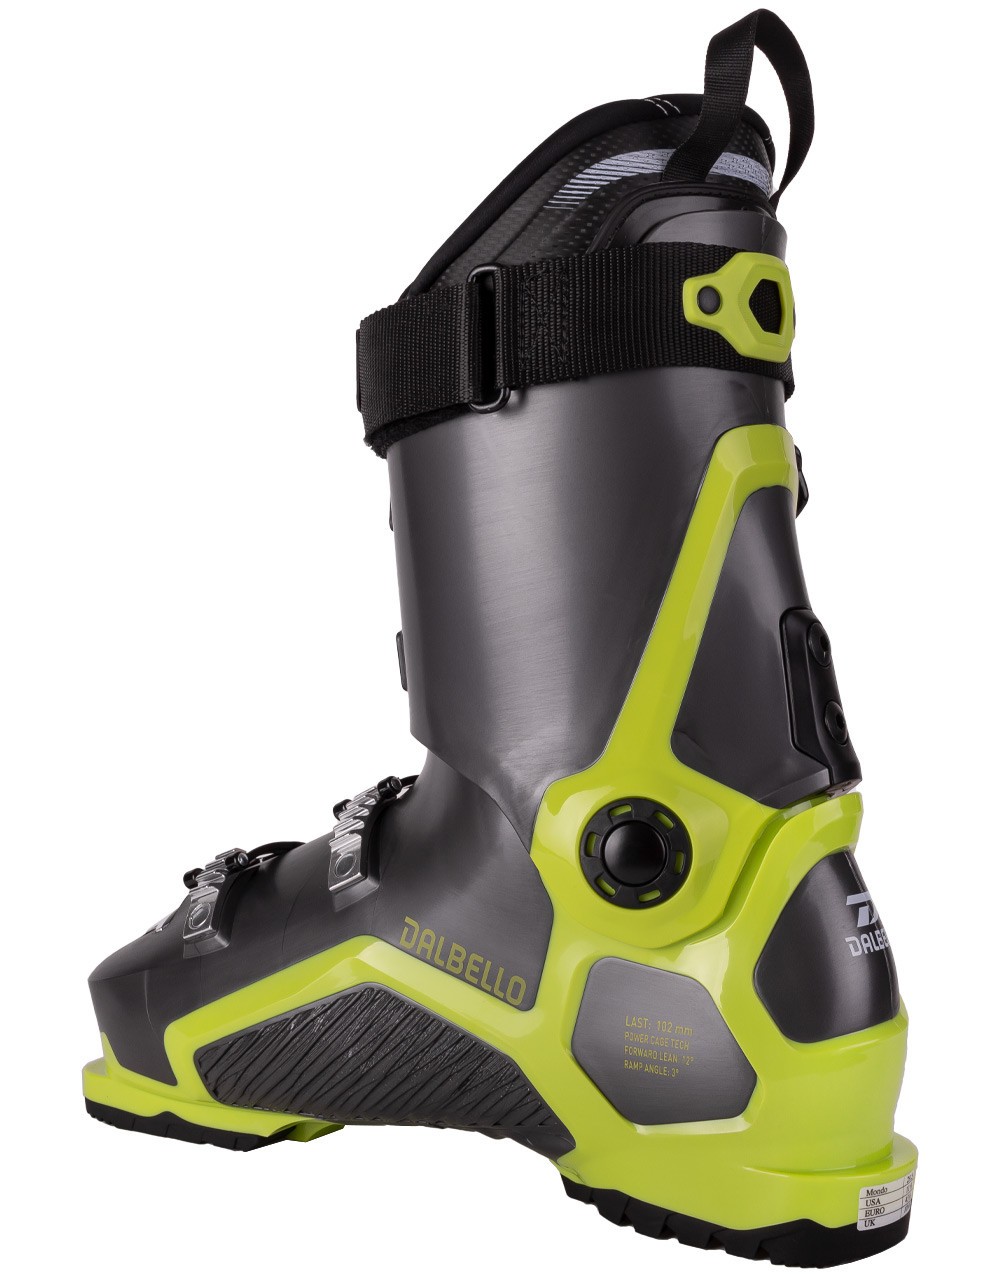 Dalbello DS AX 100 Ski Boots